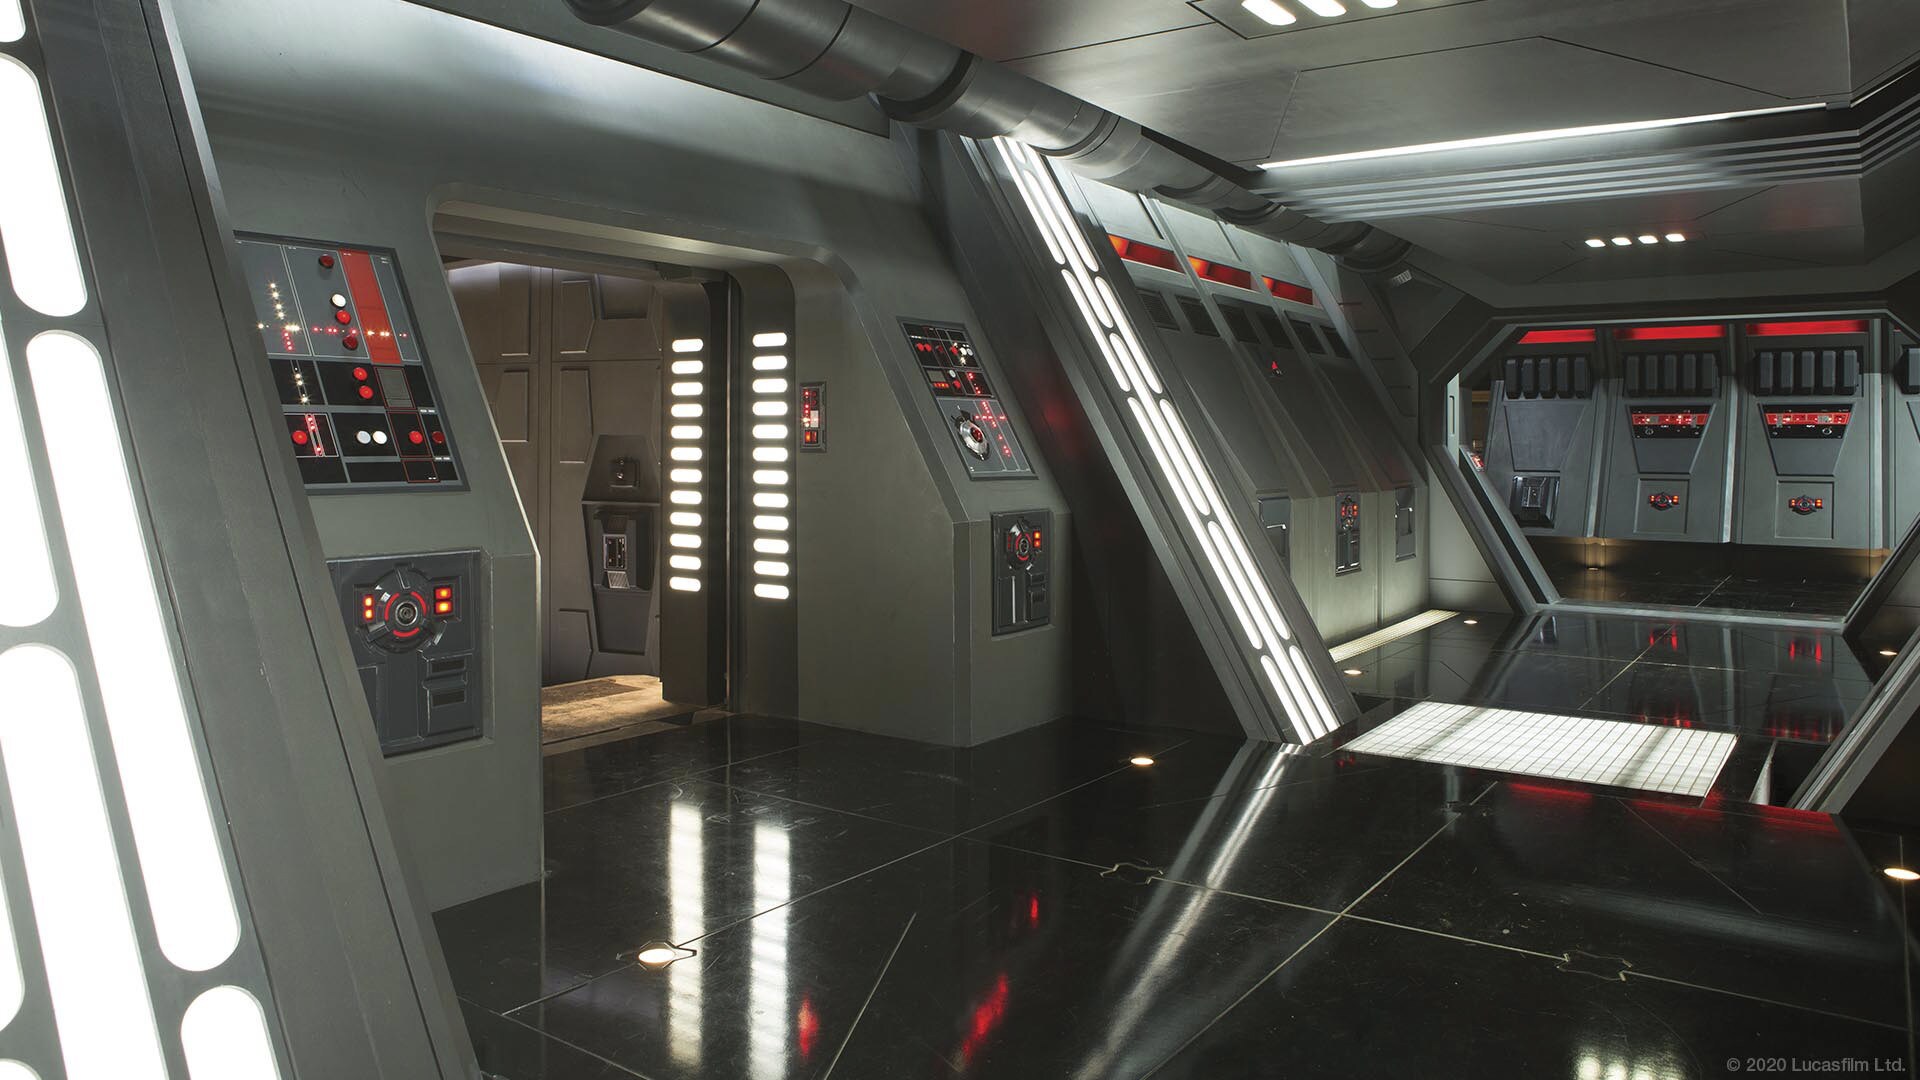 Star Wars virtual background: Kylo Ren's Star Destroyer